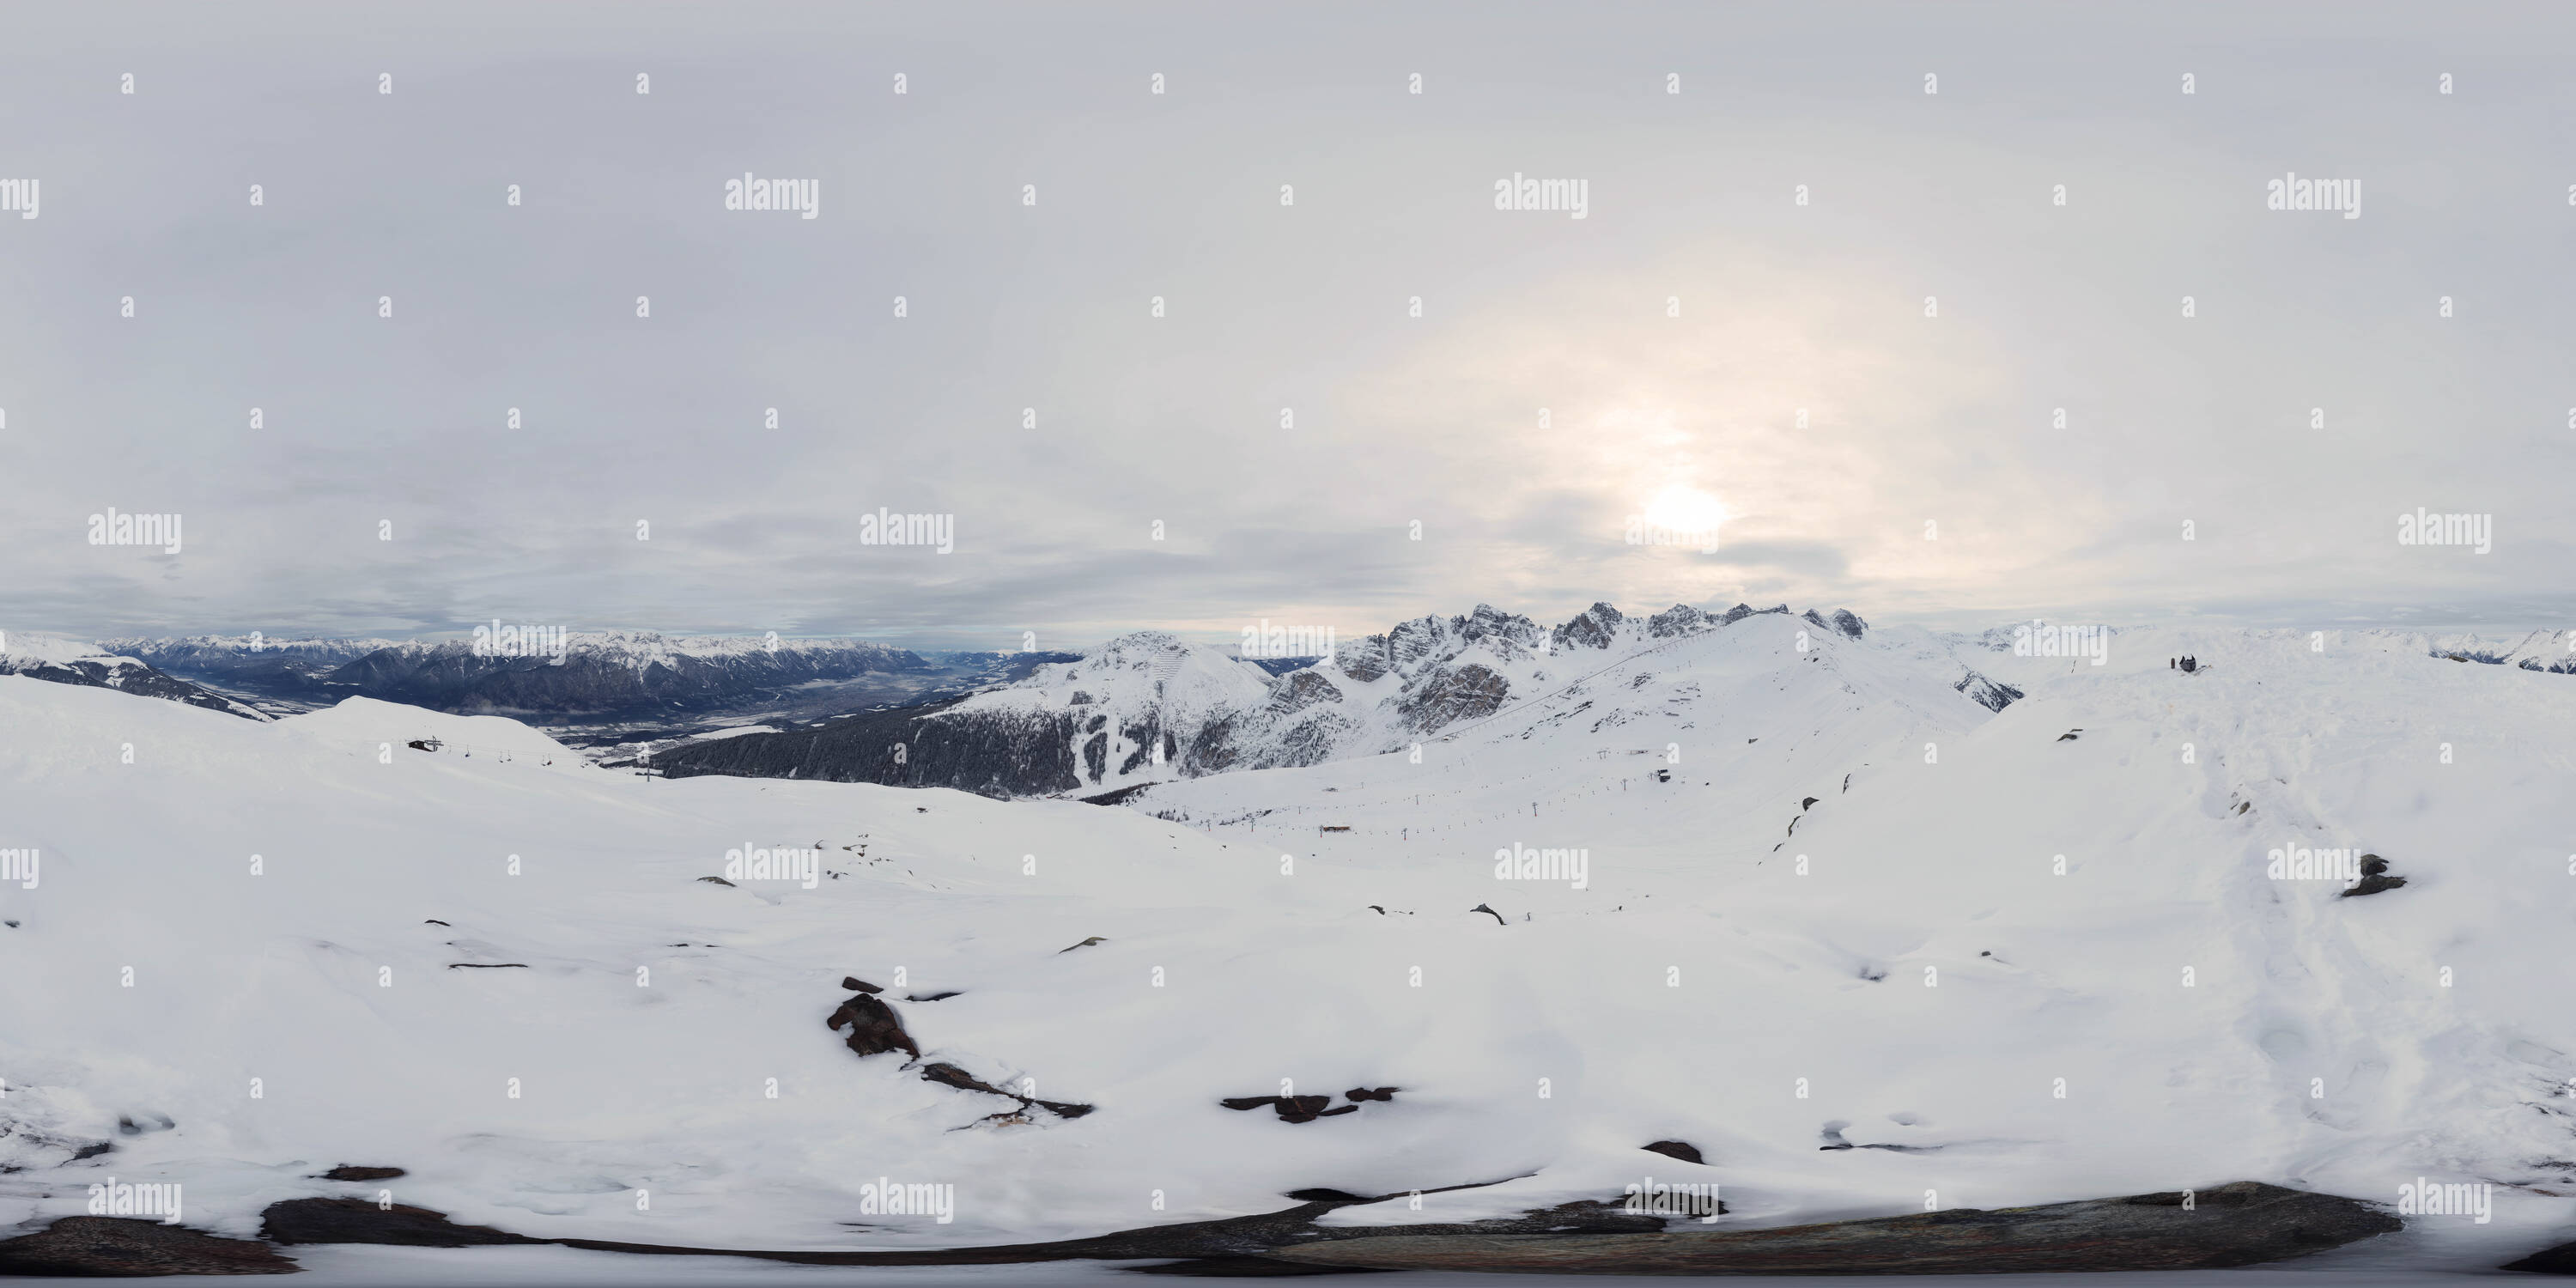 360 degree panoramic view of Ski Resort Axamer Lizum